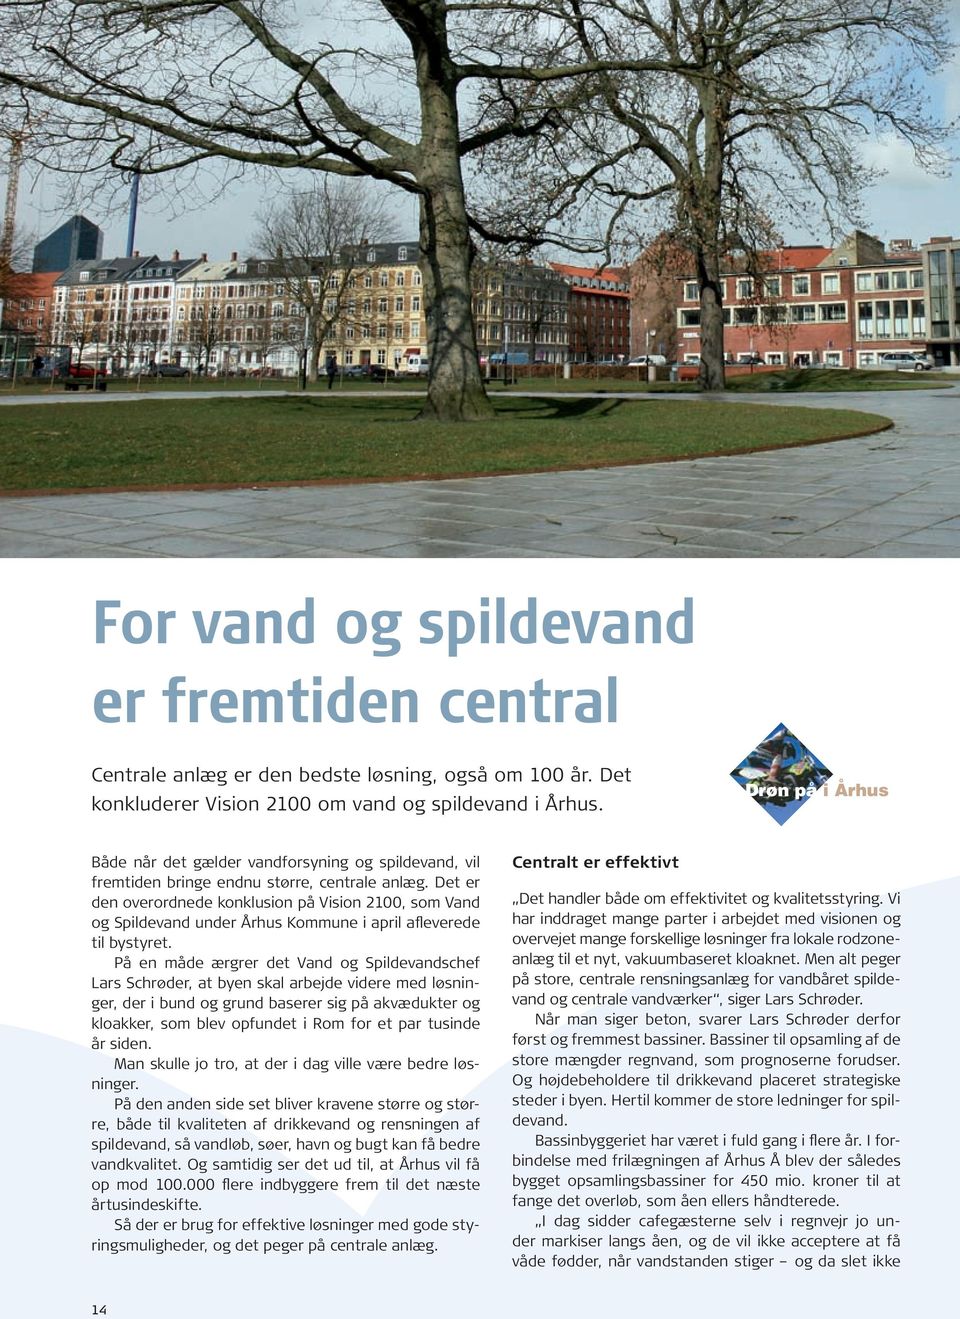 Det er den overordnede konklusion på Vision 2100, som Vand og Spildevand under Århus Kommune i april afleverede til bystyret.